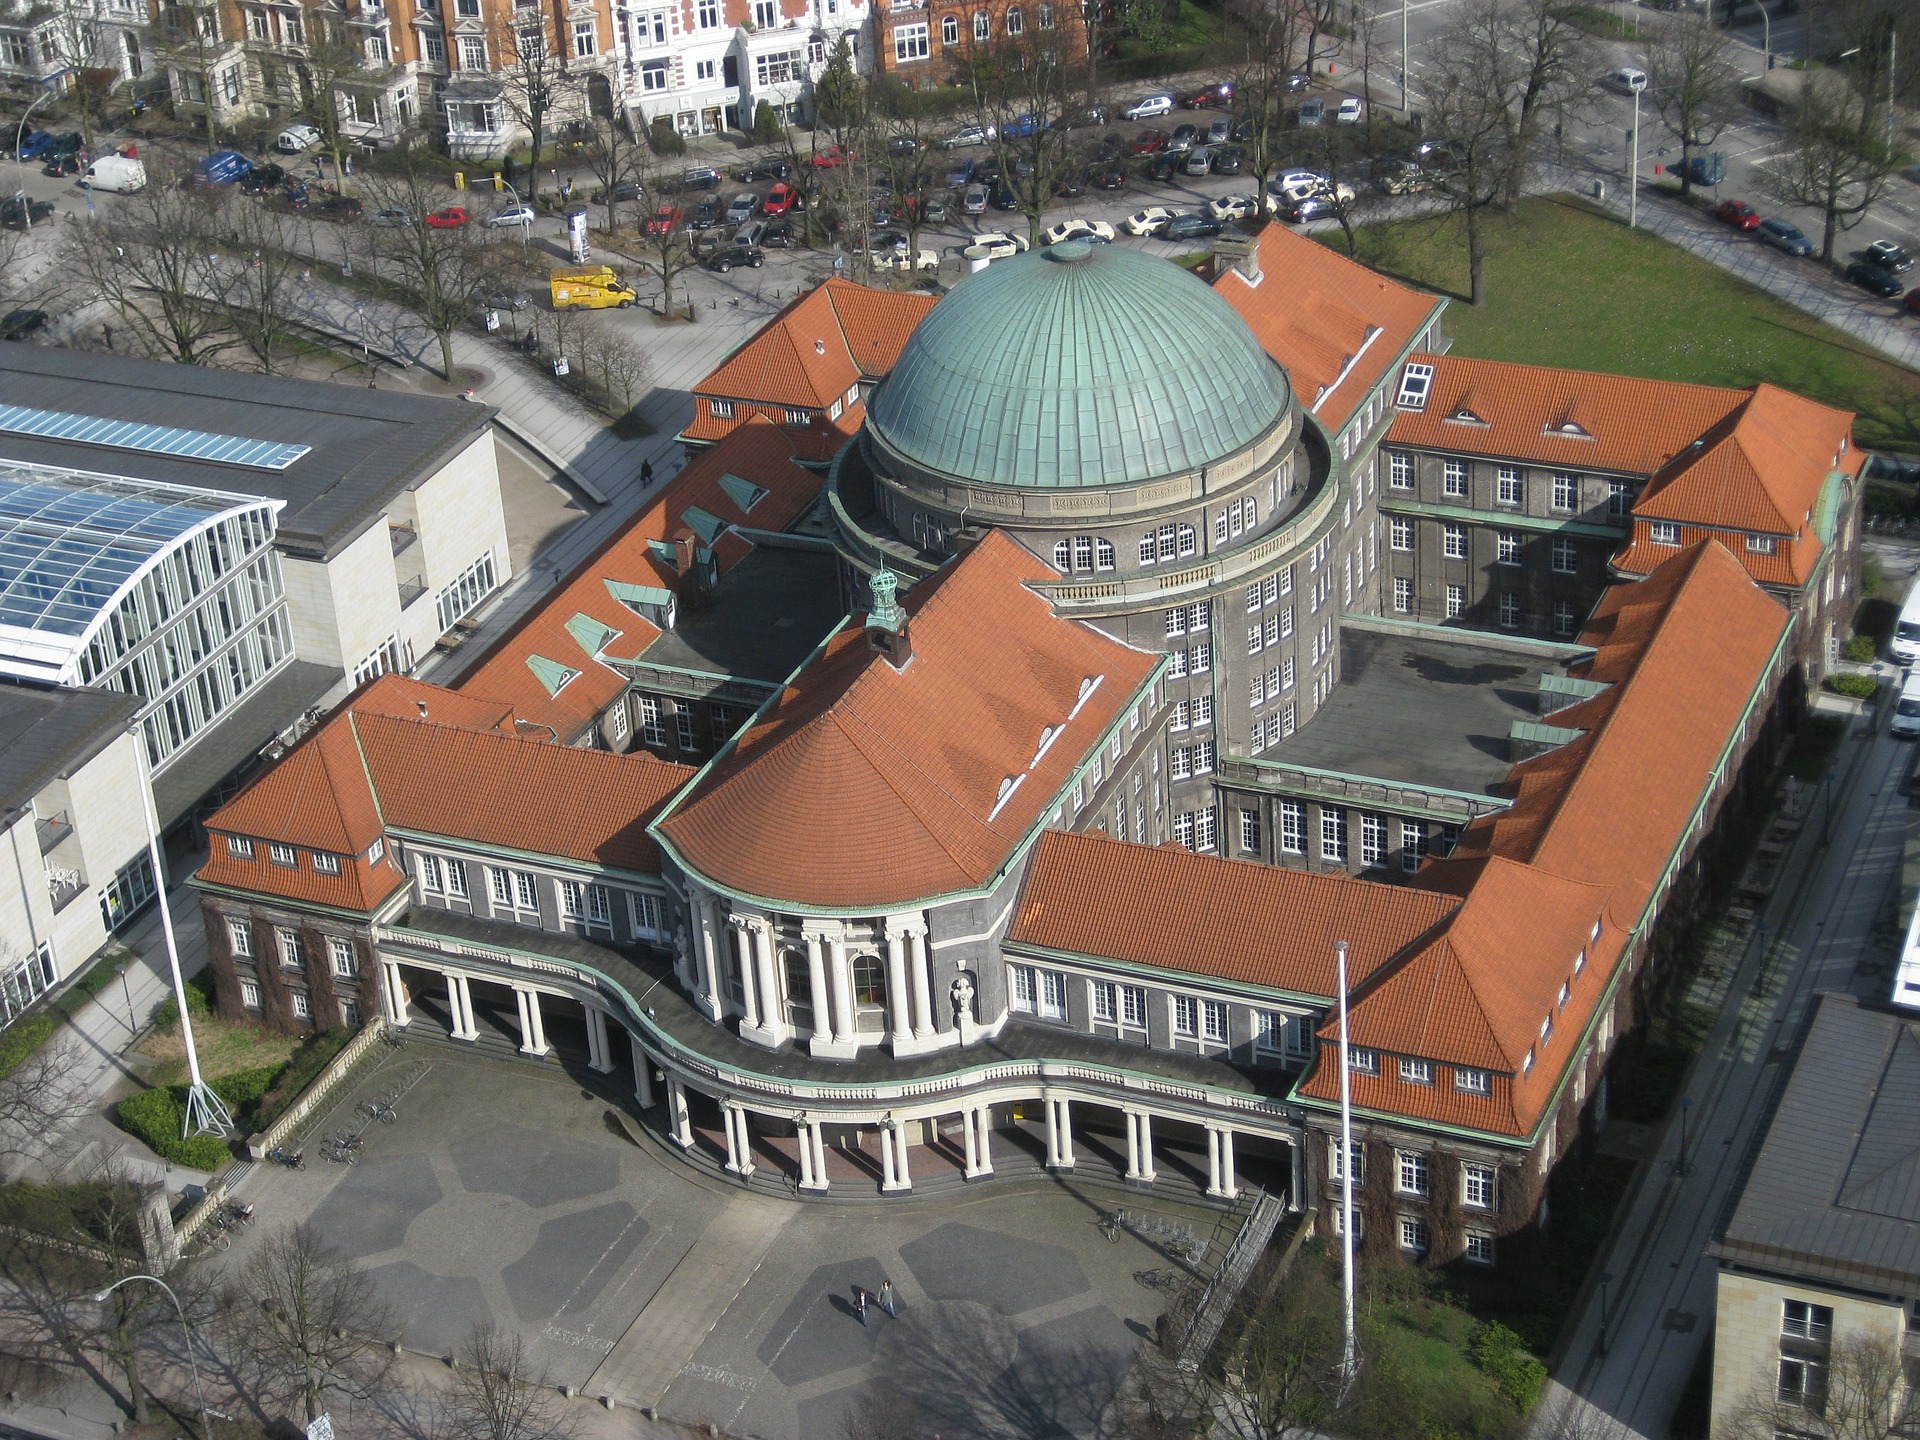 汉堡大学,它是北德最大的学术研究和教育中心与德国规模最大的十所